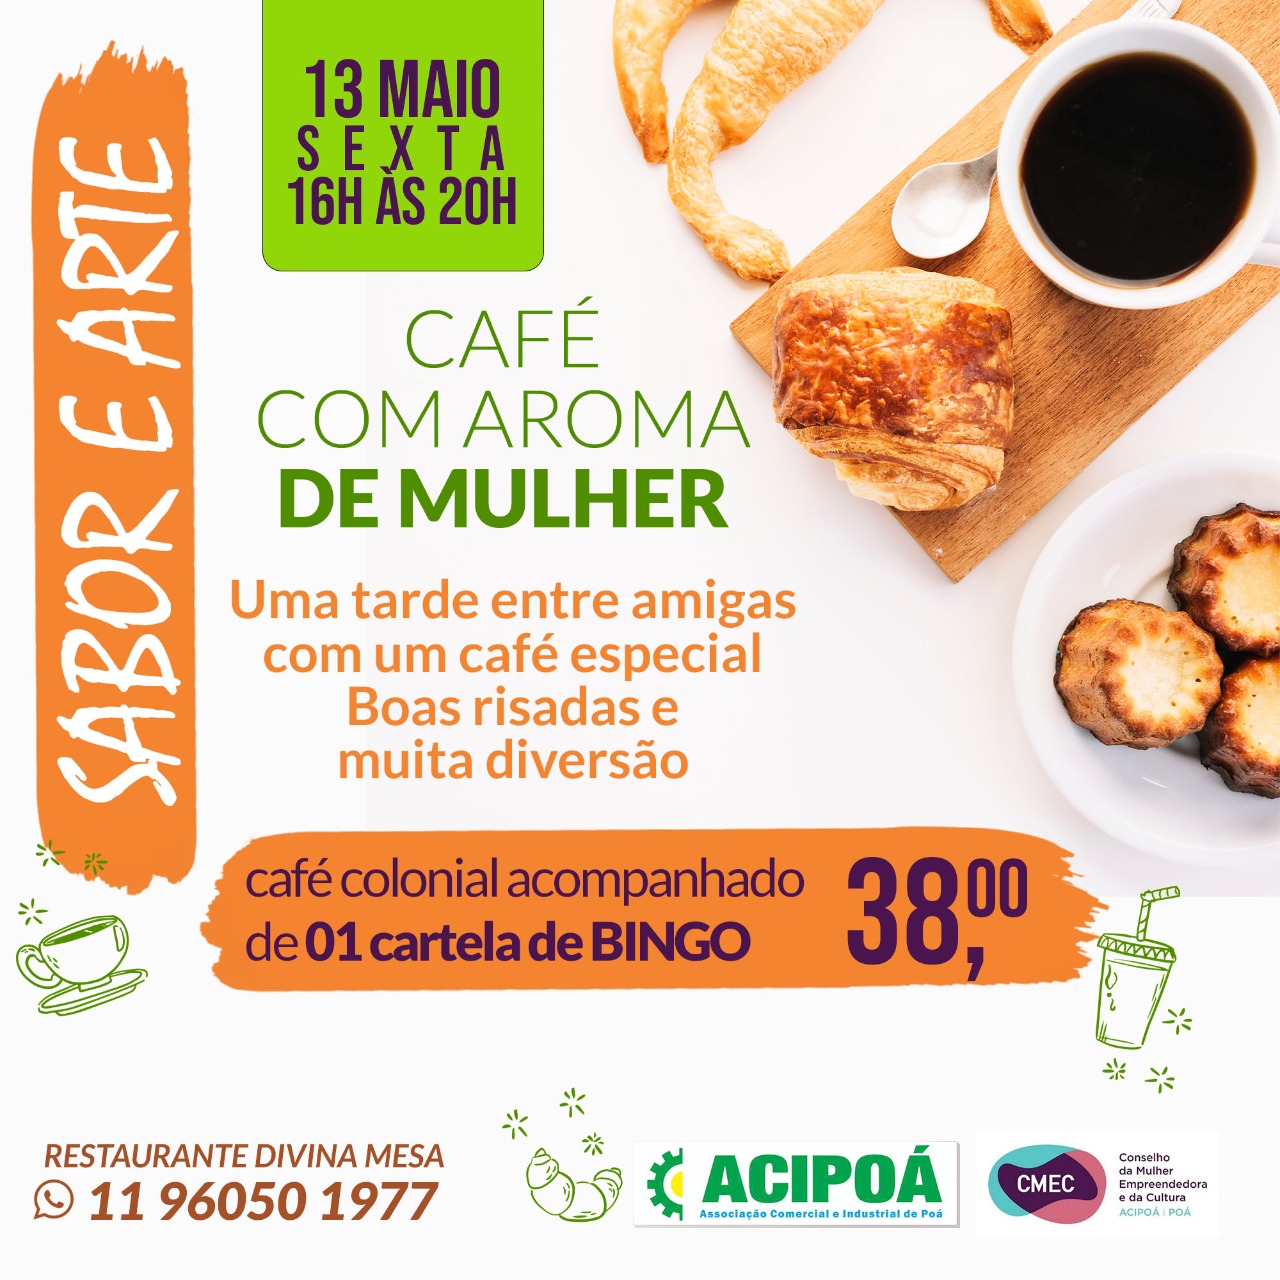 ACIPOÁ CMEC Café com Aroma de Mulher